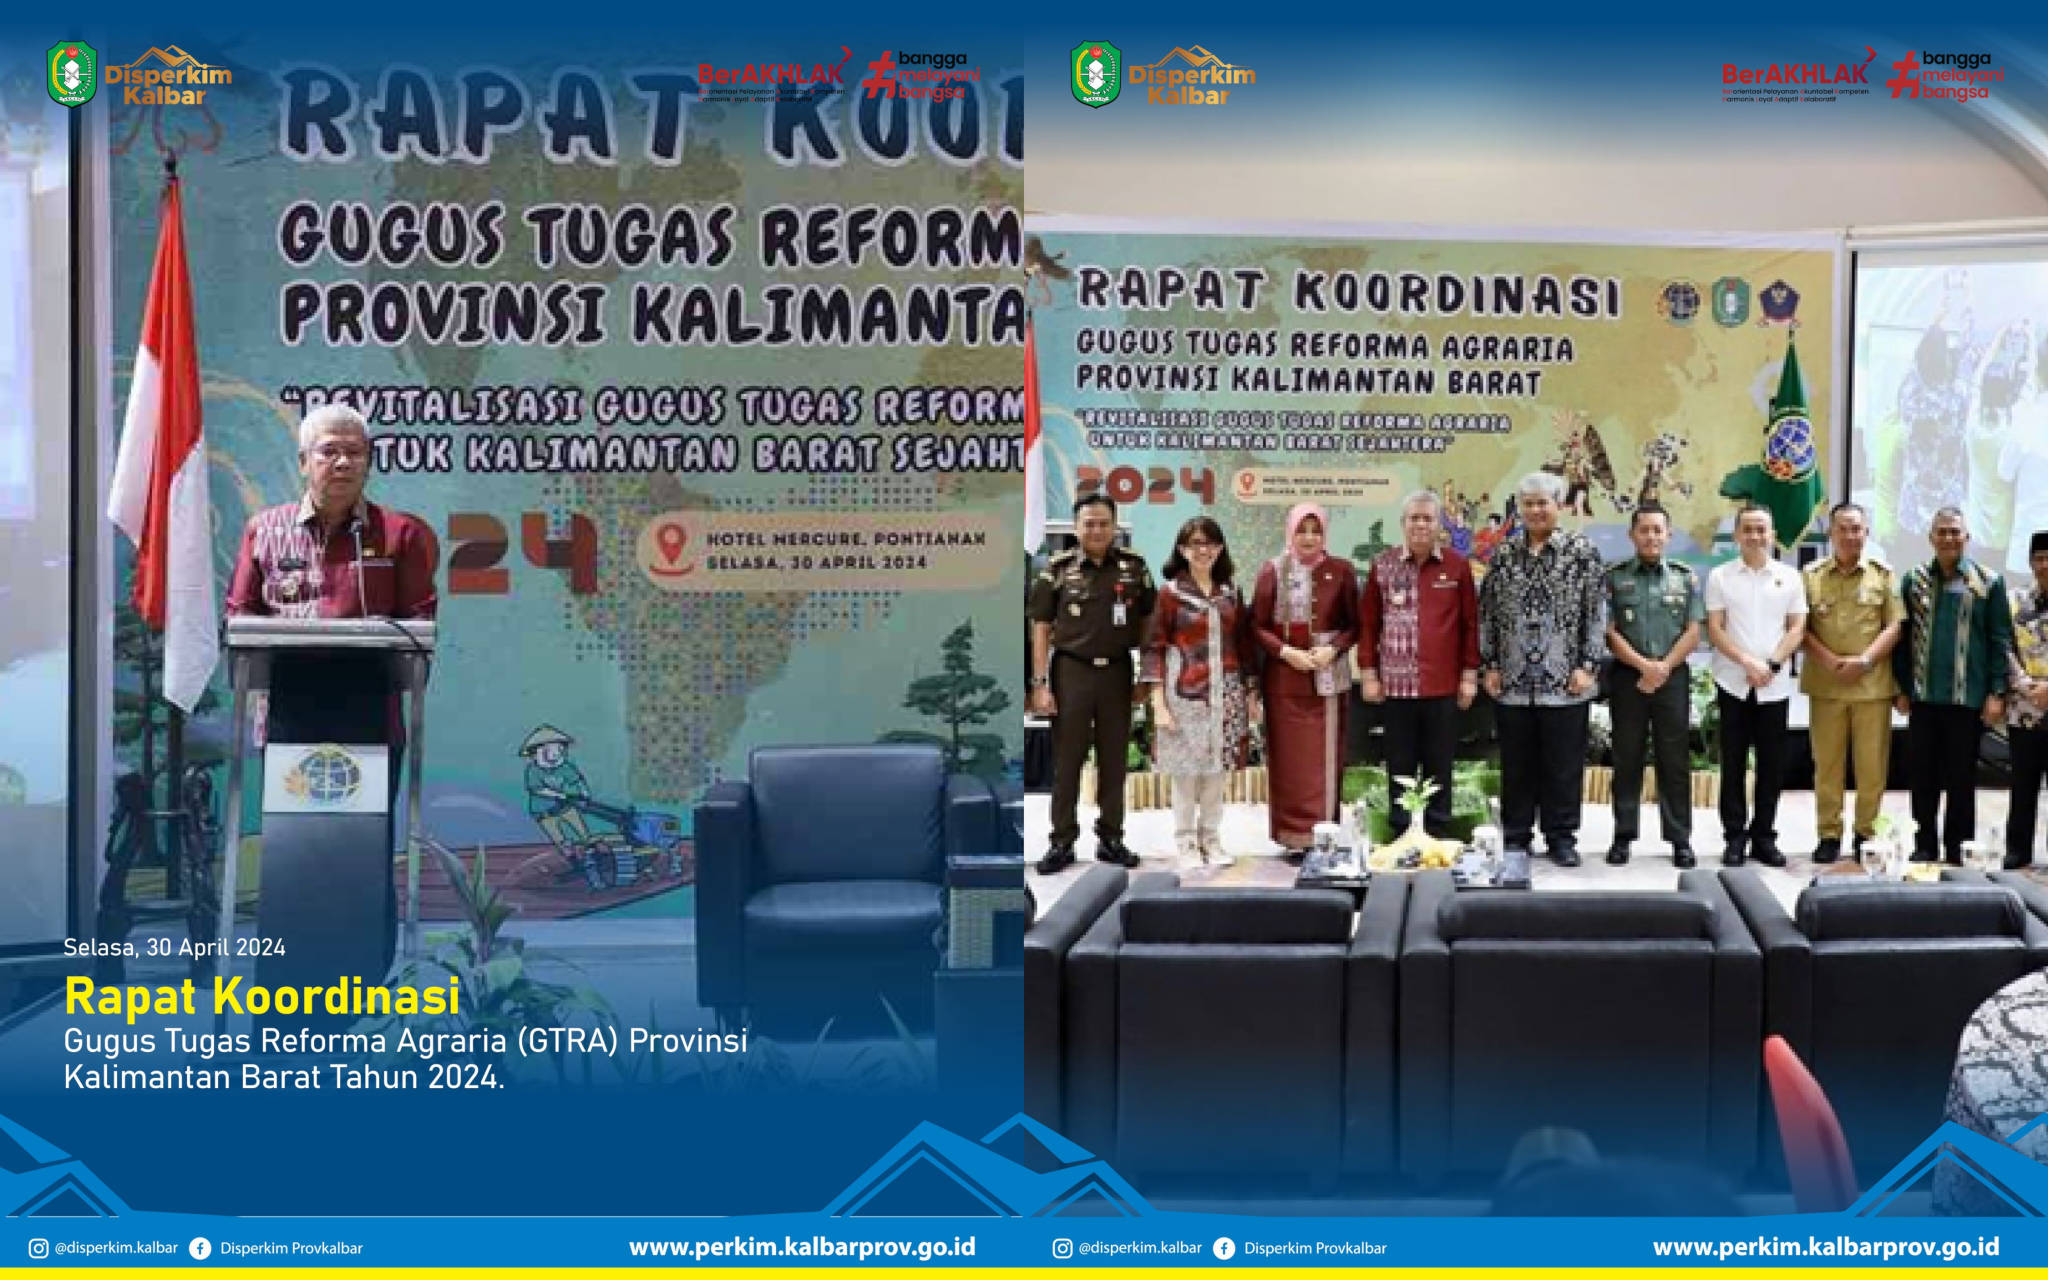 Rapat Koordinasi (Rakor) Gugus Tugas Reforma Agraria (GTRA) Provinsi Kalimantan Barat Tahun 2024